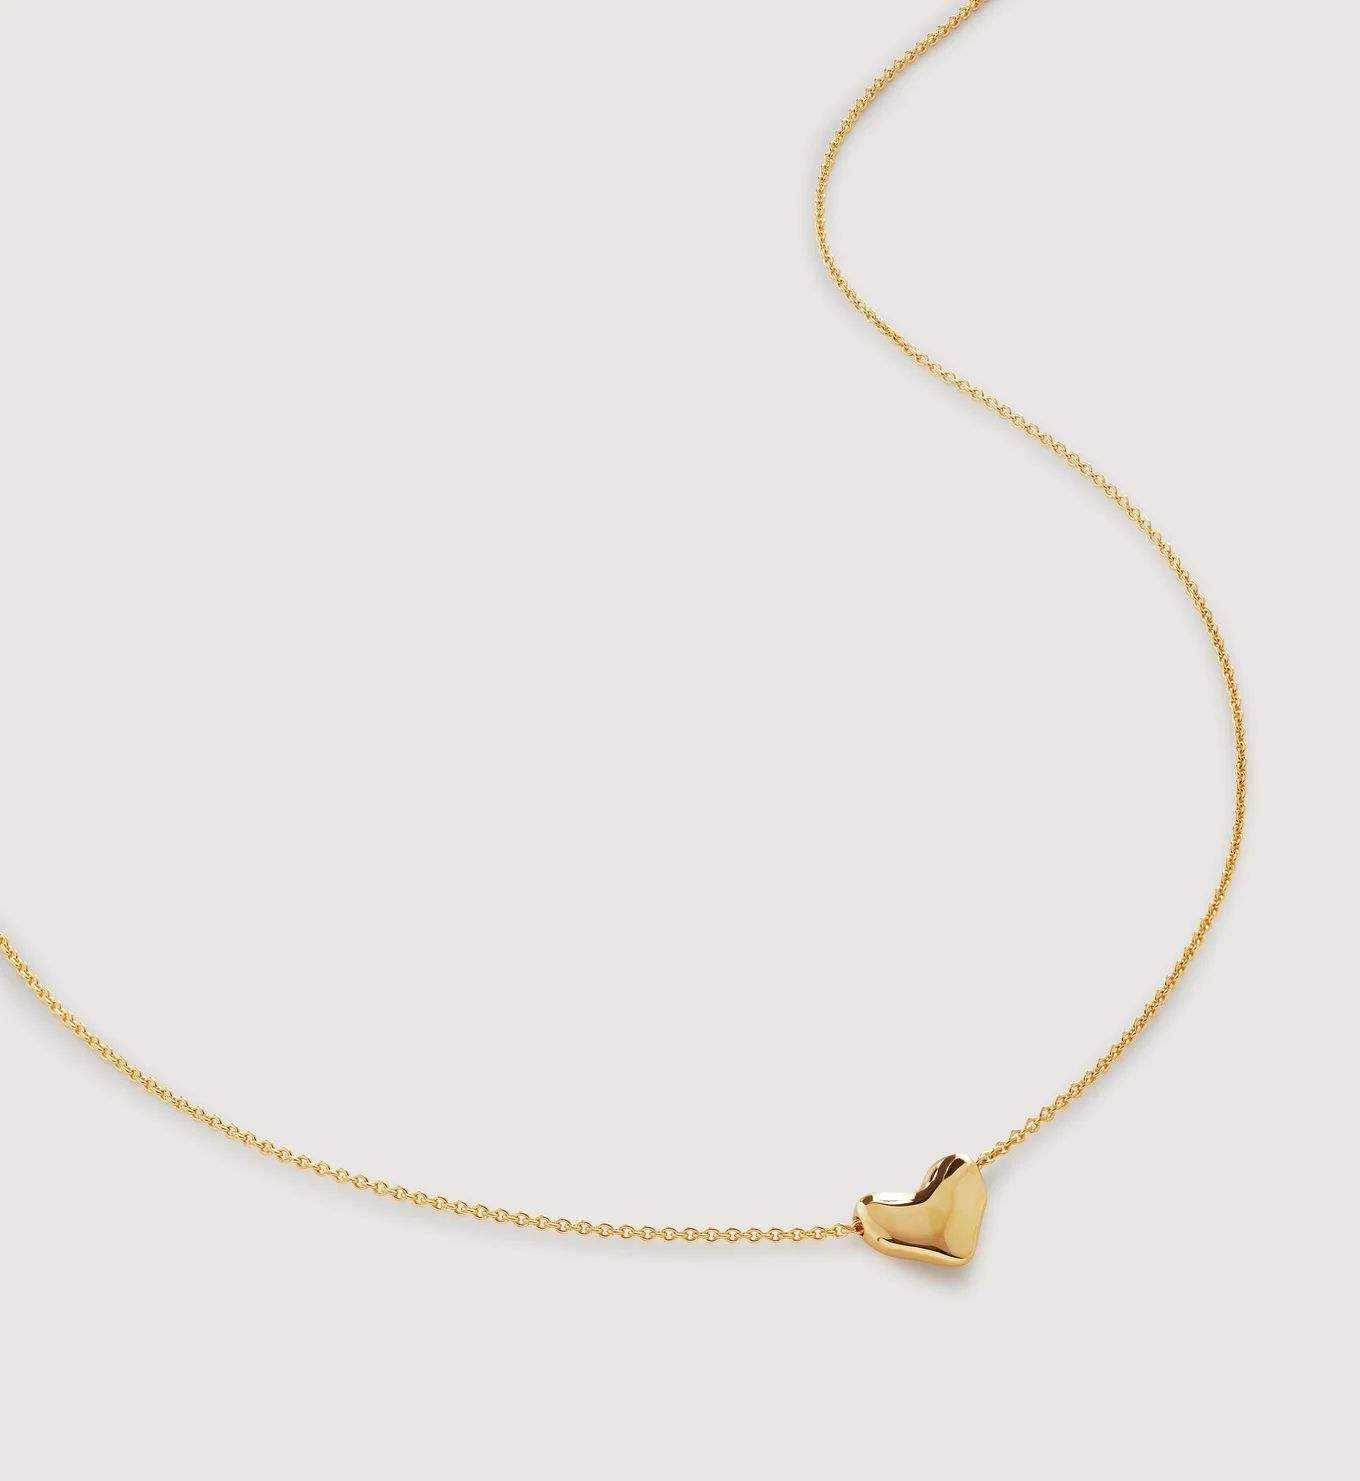 Heart Chain Necklace Adjustable 41-46cm/16-18' | Monica Vinader | Monica Vinader (US)